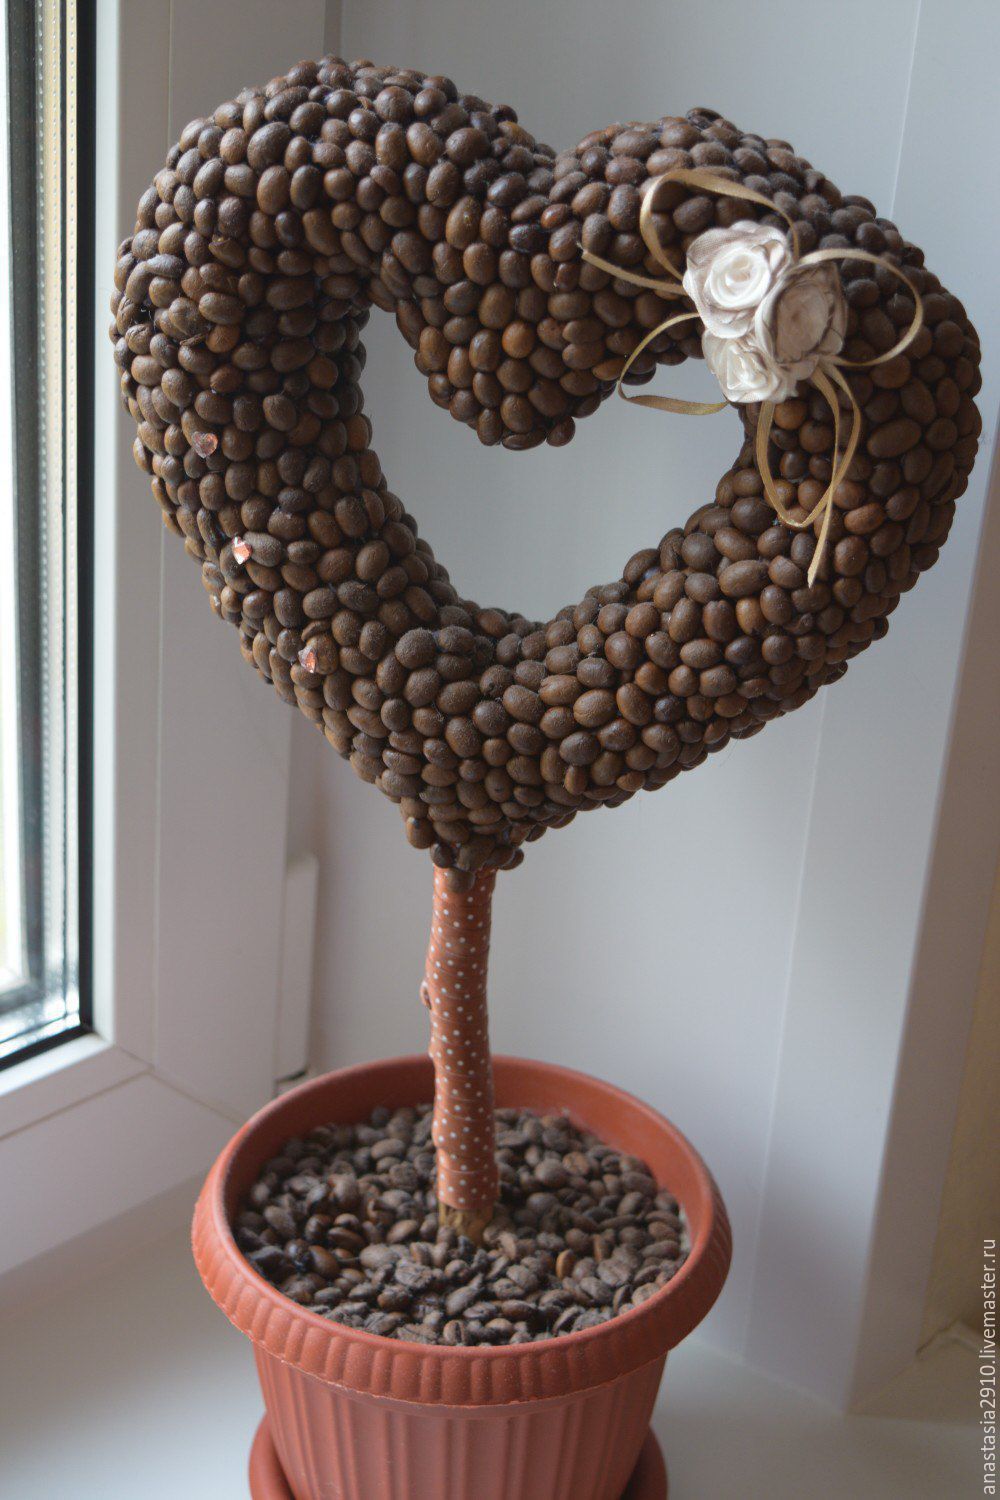 Топиарий в чашке: кофейное сердце с крыльями из пёрышков. Фото + видео!